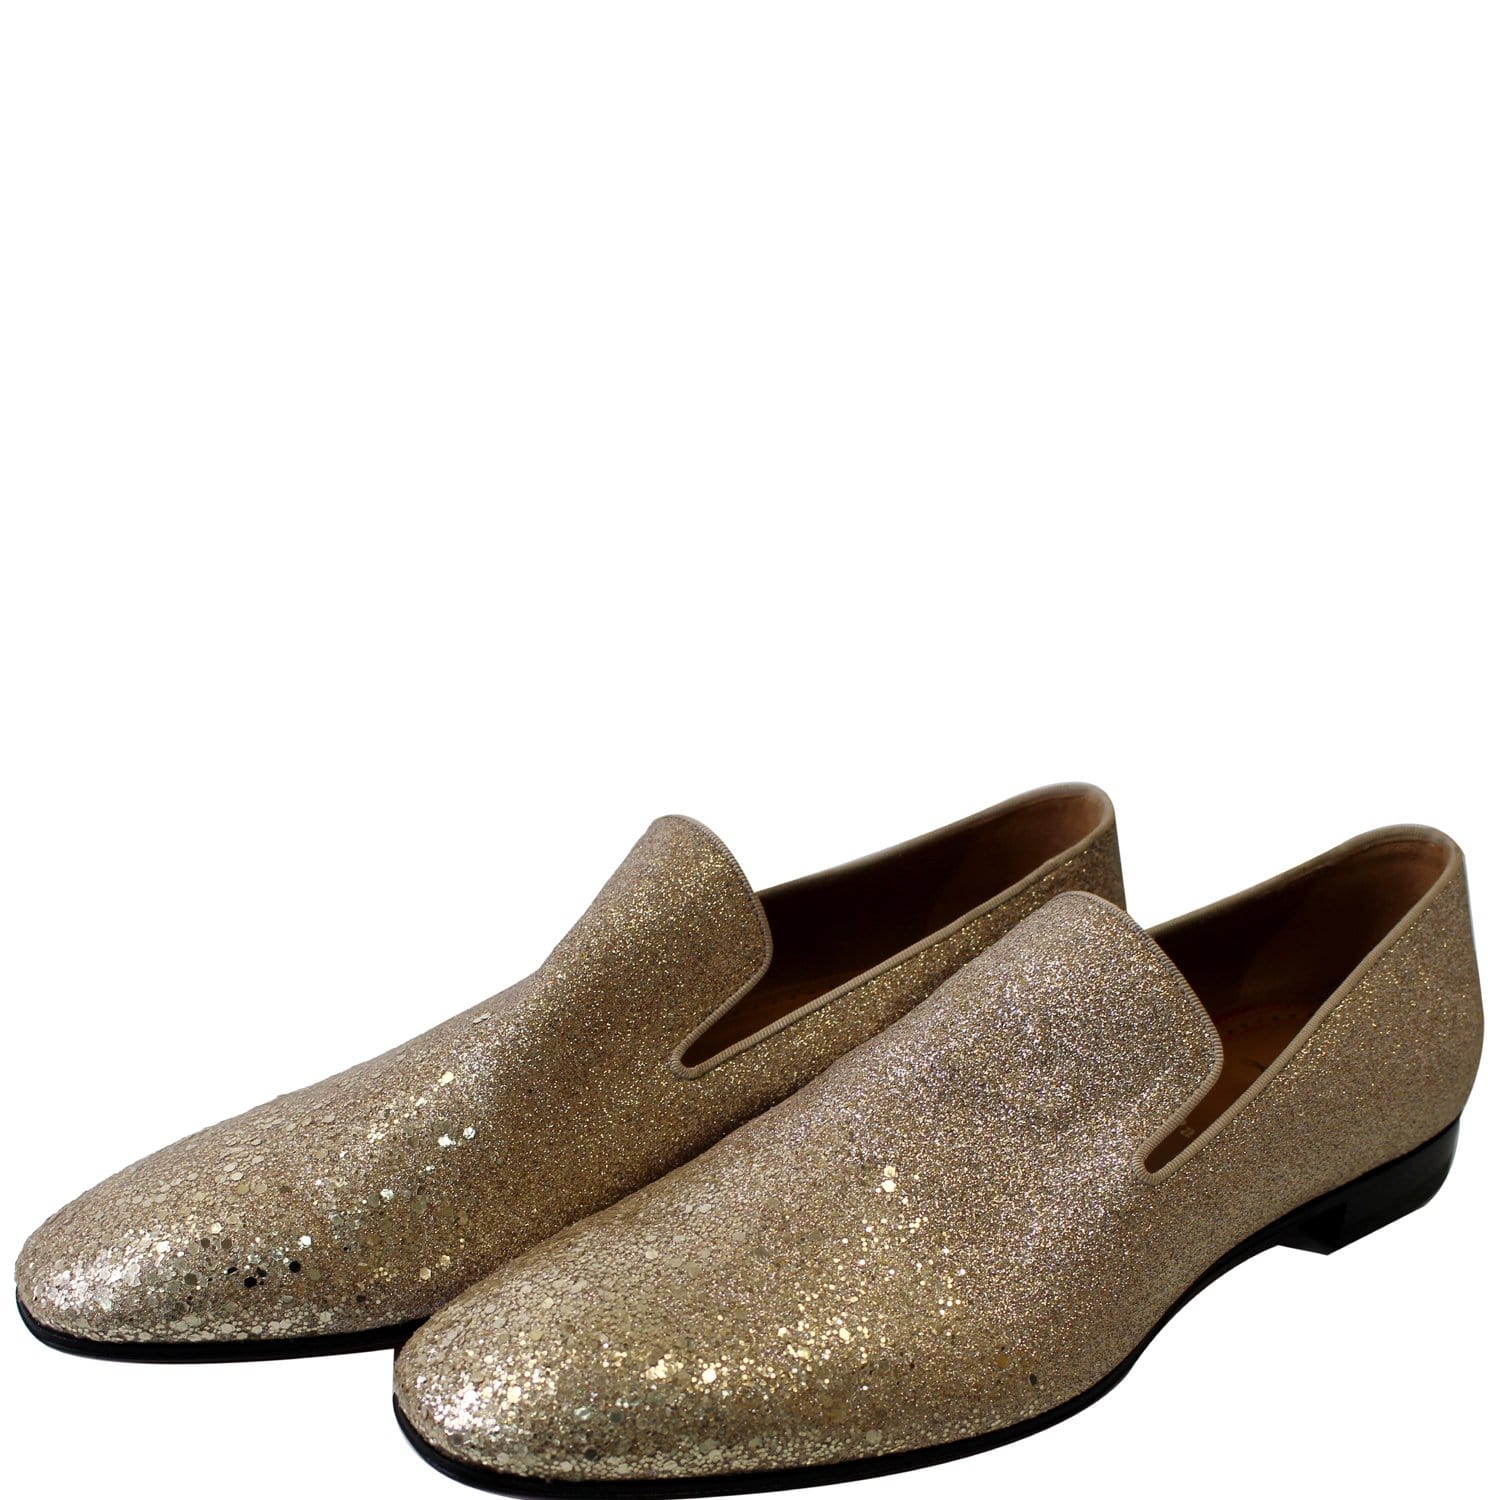 CHRISTIAN LOUBOUTIN Men's Dandelion Glitter Dress Loafer Shoes Go